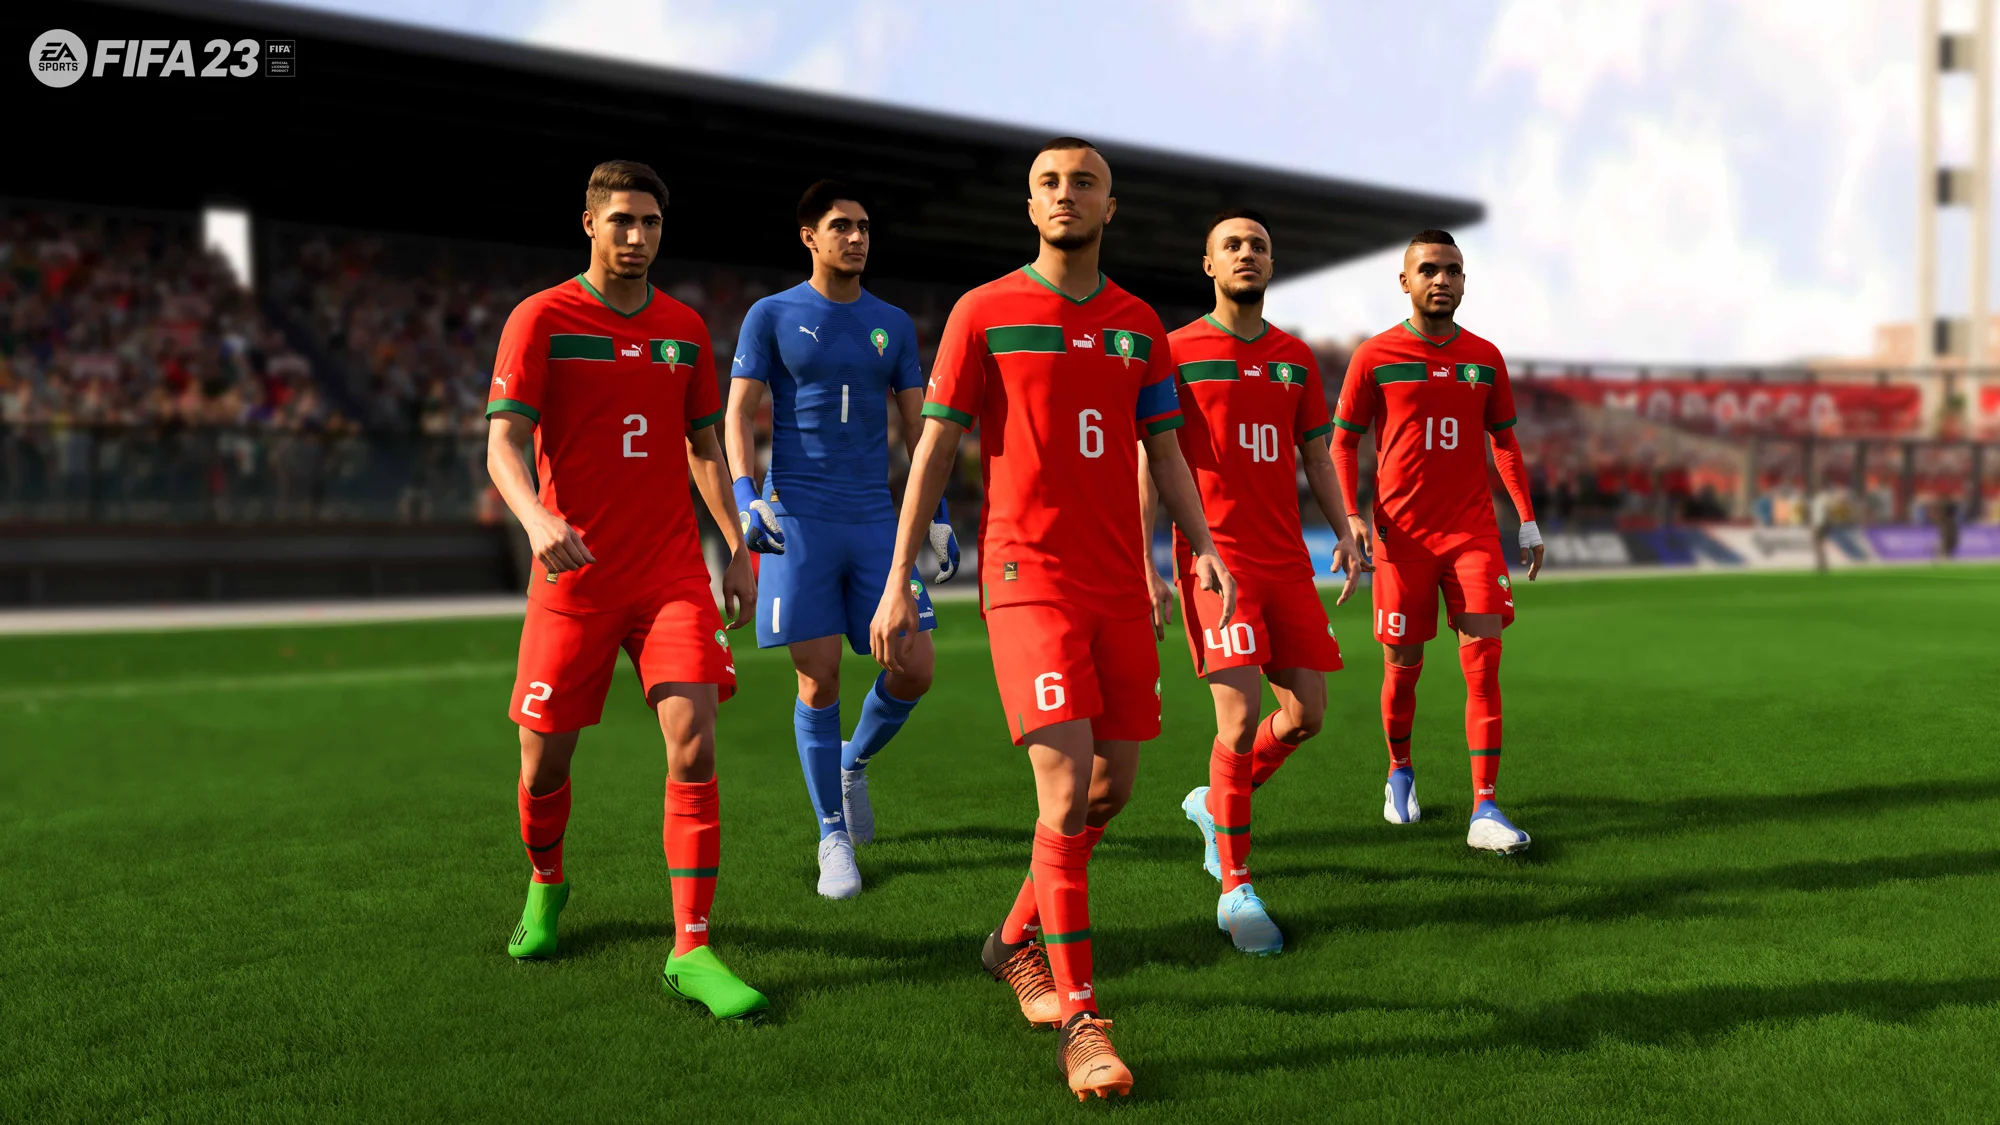 Le Maroc fait son apparition dans EA SPORTS #FIFA23